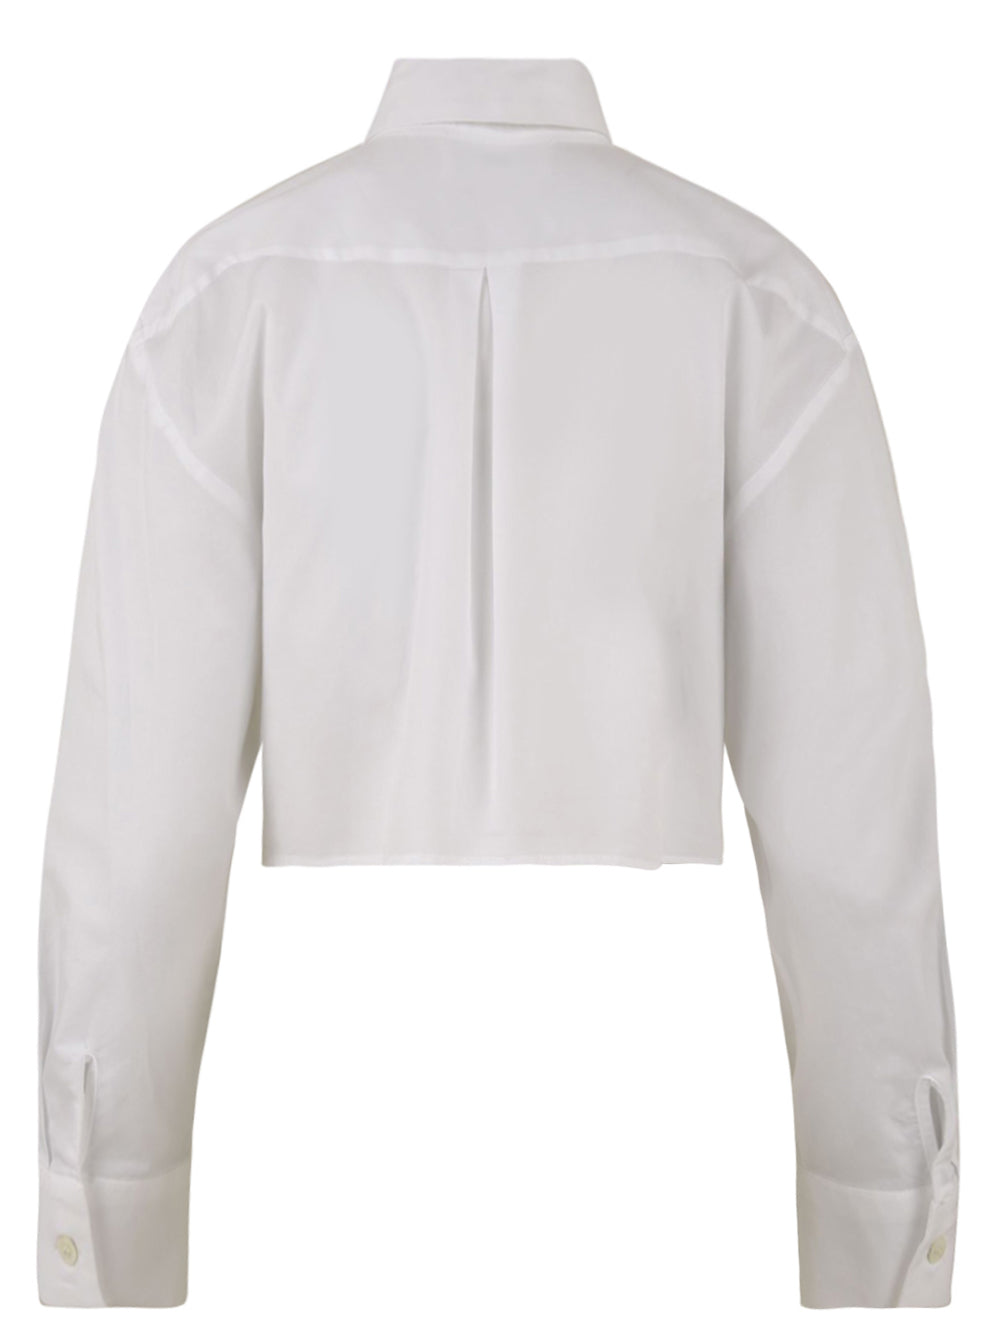 Camicia Donna cropped bianca, Solotre, retro